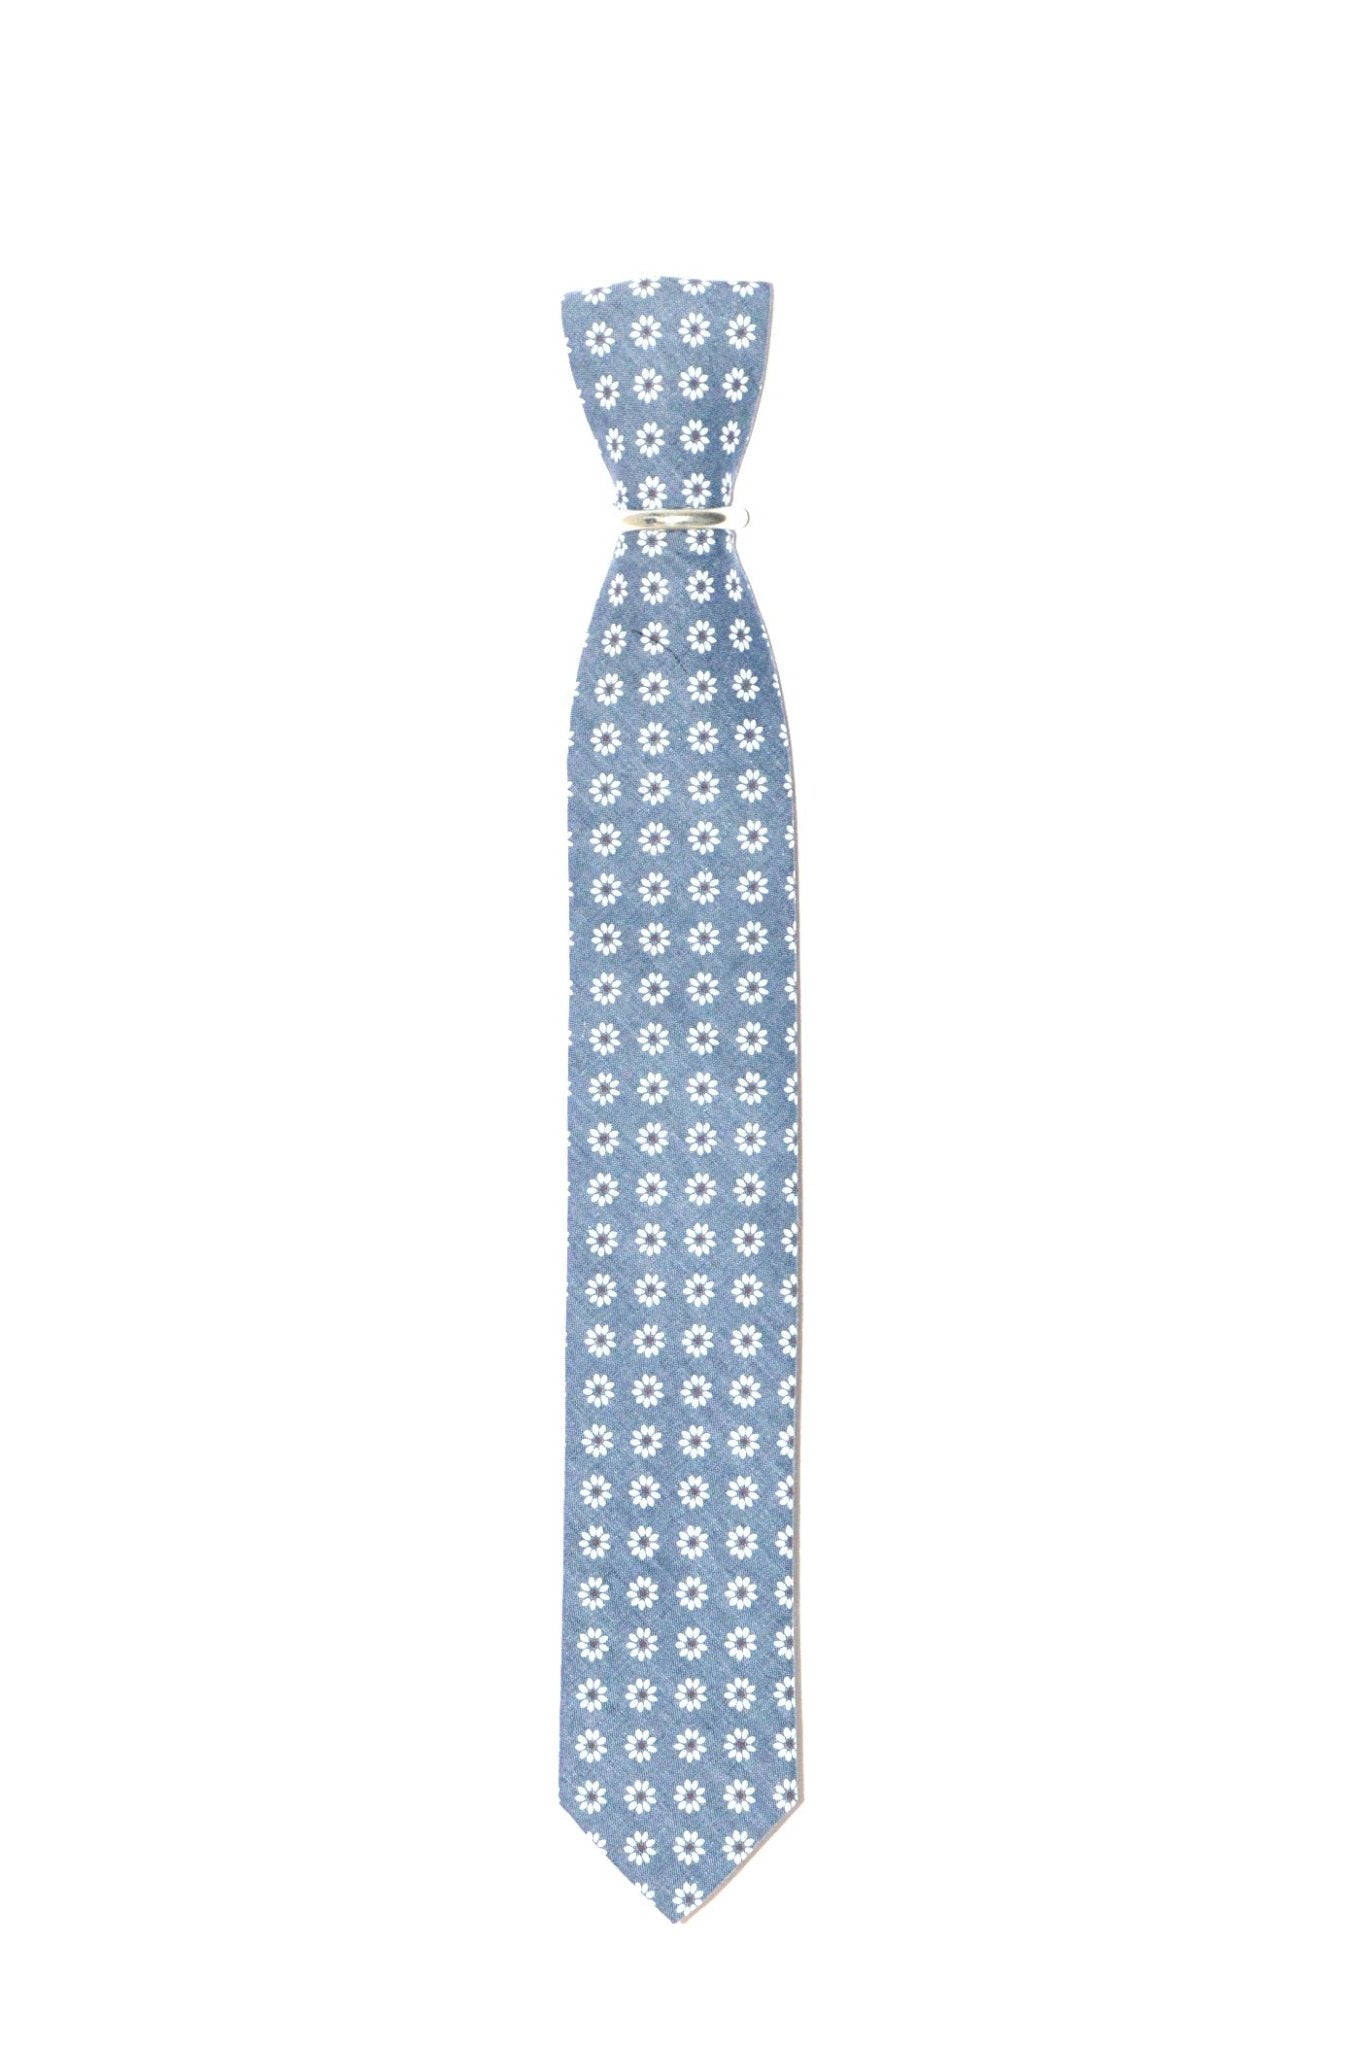 Schmale blaue Krawatte weißen Blumen - REAL GUYS